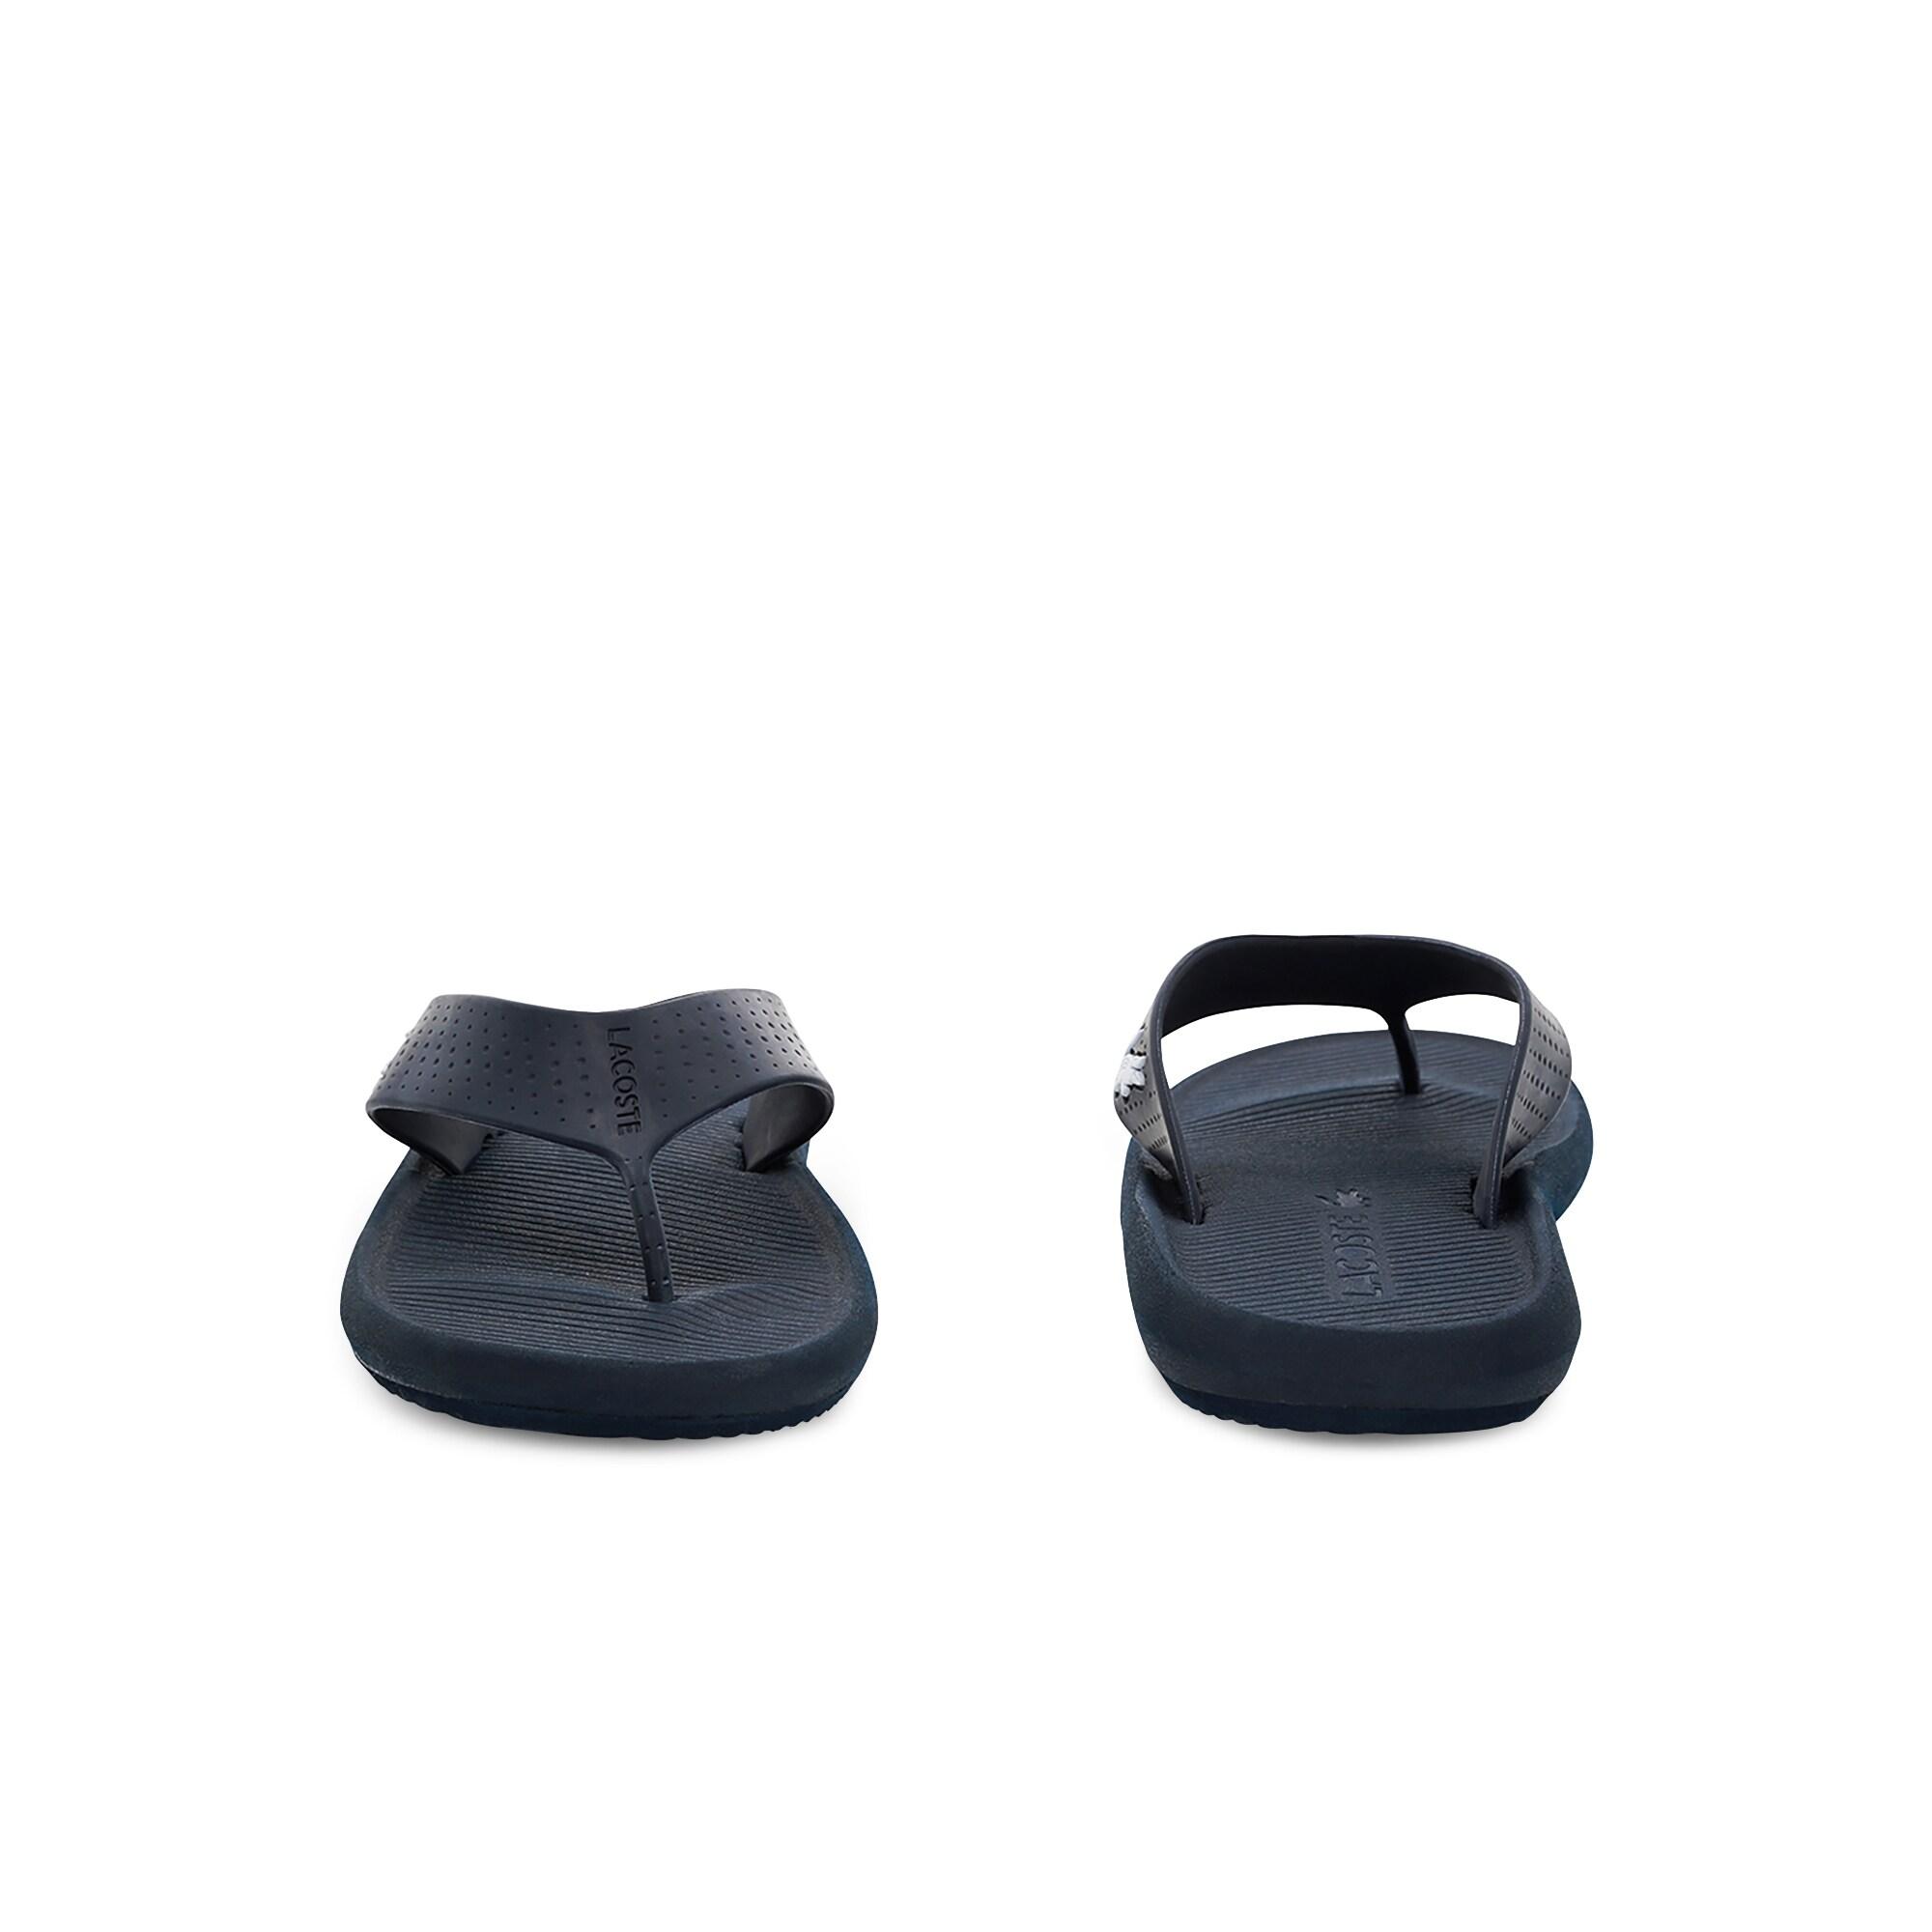 Lacoste Croco Sandal 219 1 Cma Erkek Lacivert - Beyaz Terlik. 6